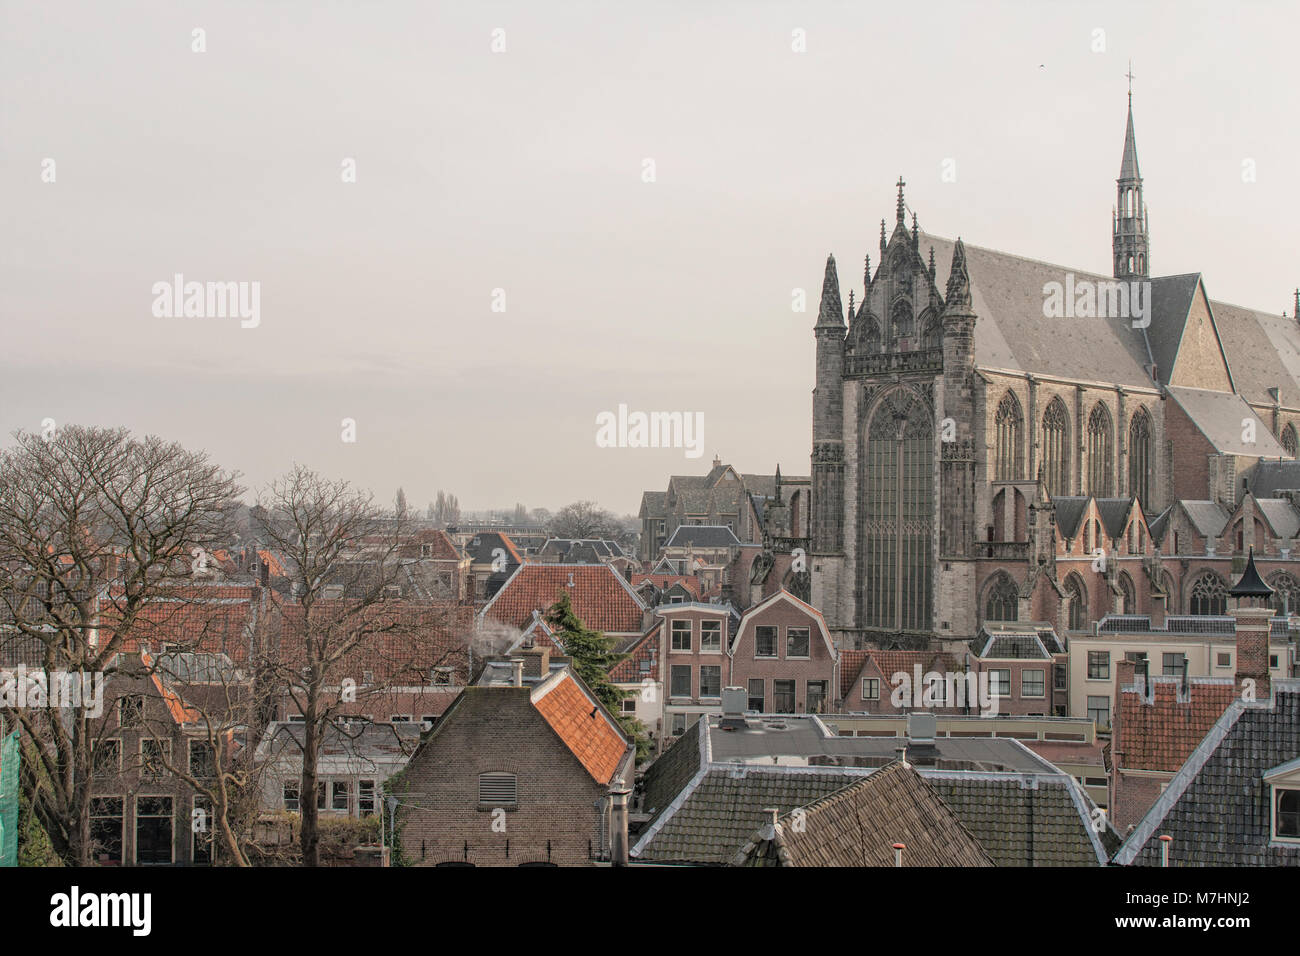 Vista sulla chiesa medievale (1314) nella città di Leiden nei Paesi Bassi con case medioevali vicini. Foto Stock